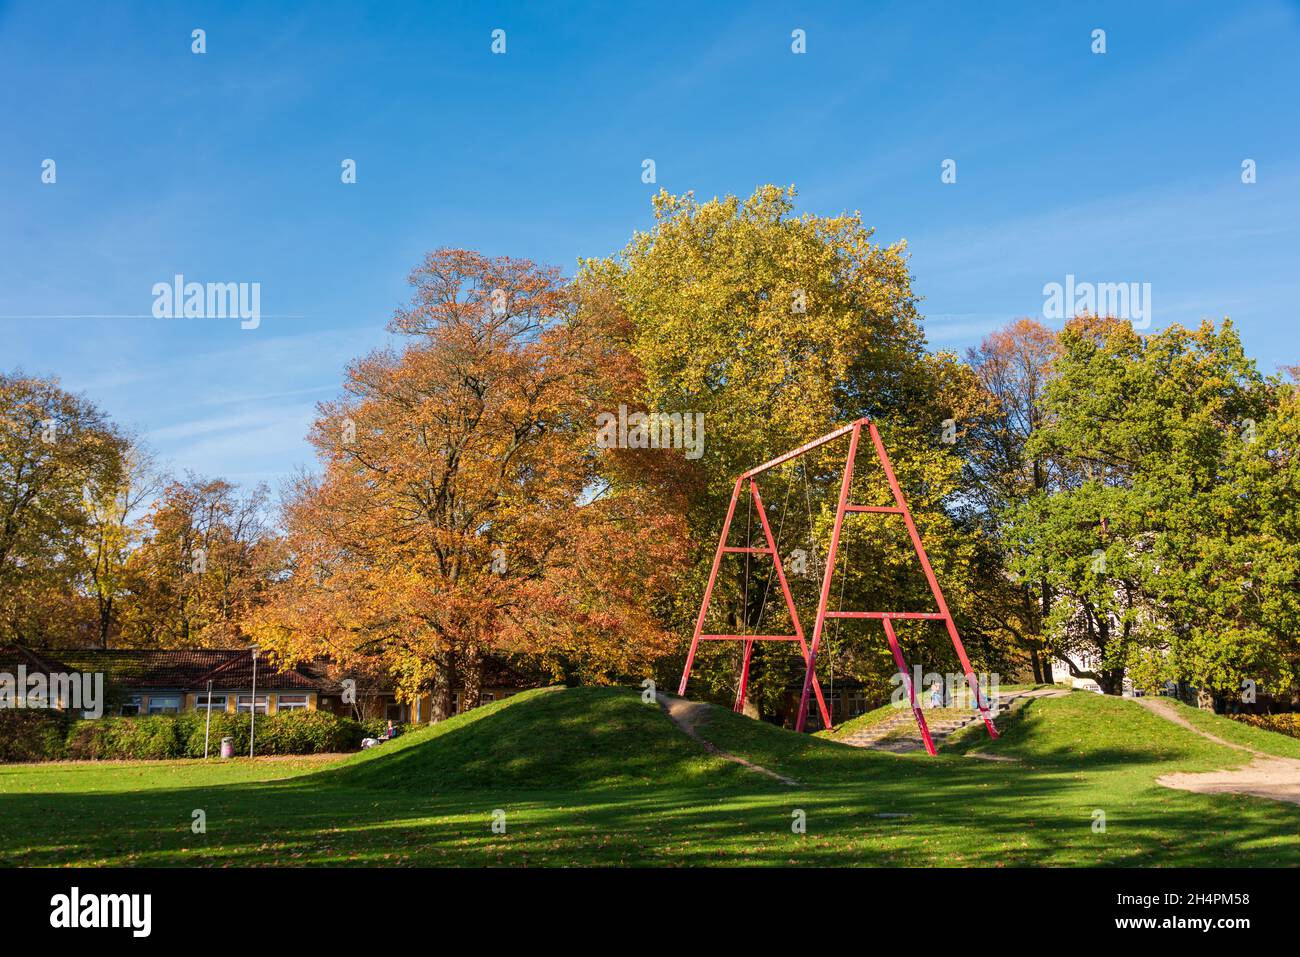 Kinderspielplatz in einem Stadtpark in Norddeutschland mit Bäumen im farbigen Herbstlaub Stock Photo